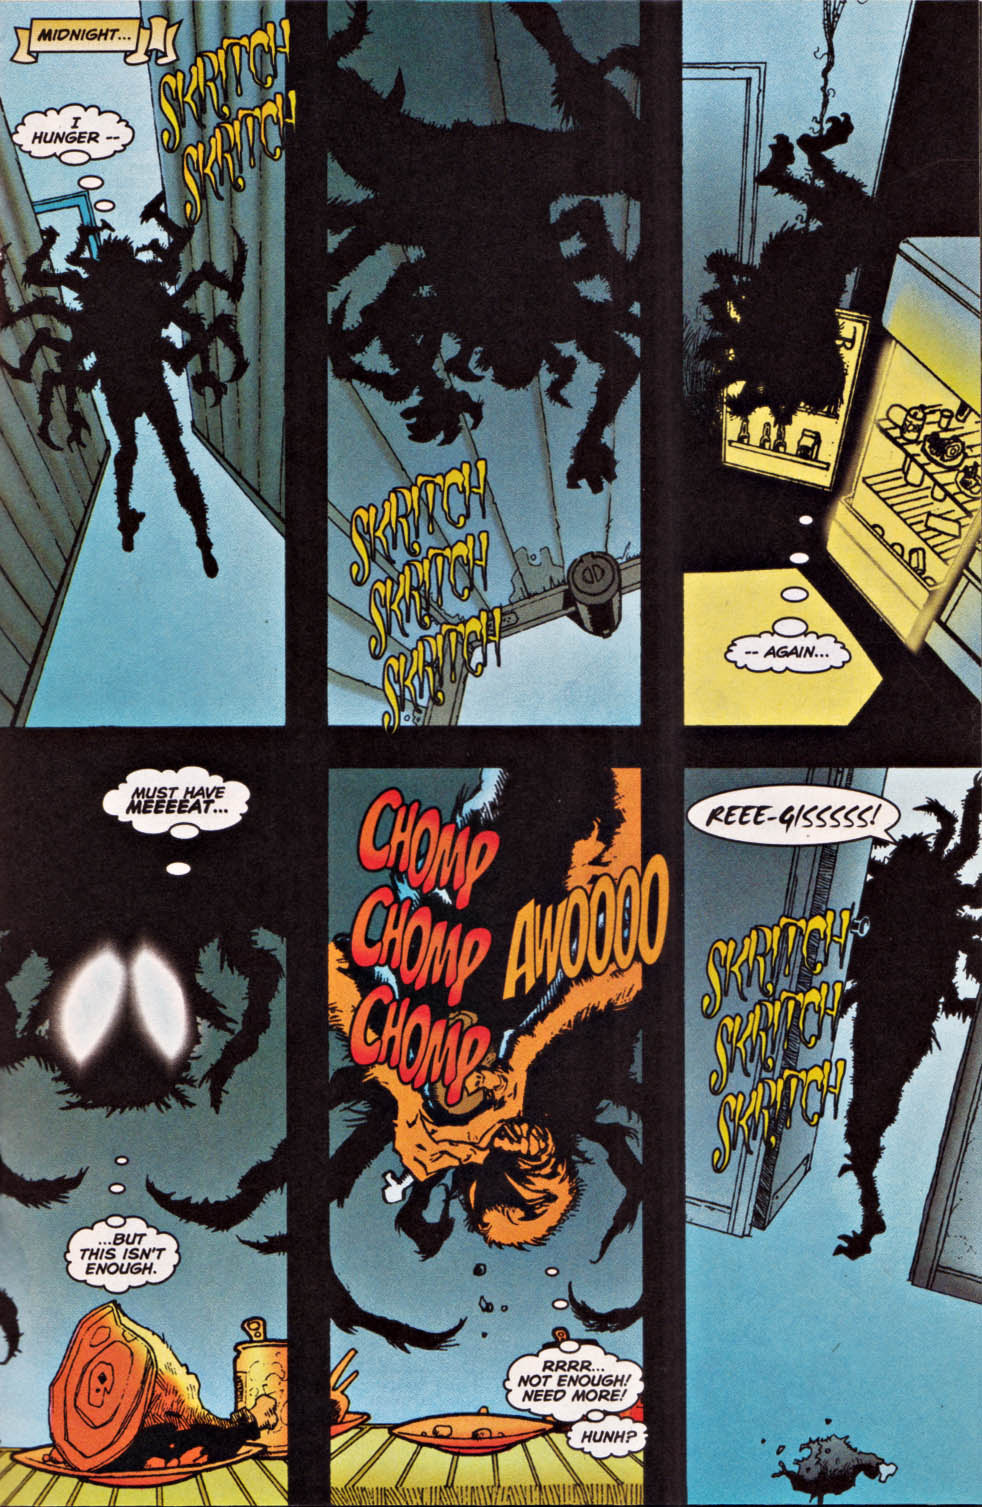 Галерея Жуткие и пугающие версии Человека-паука из комиксов Marvel: от каннибала до огромного мутанта - 4 фото